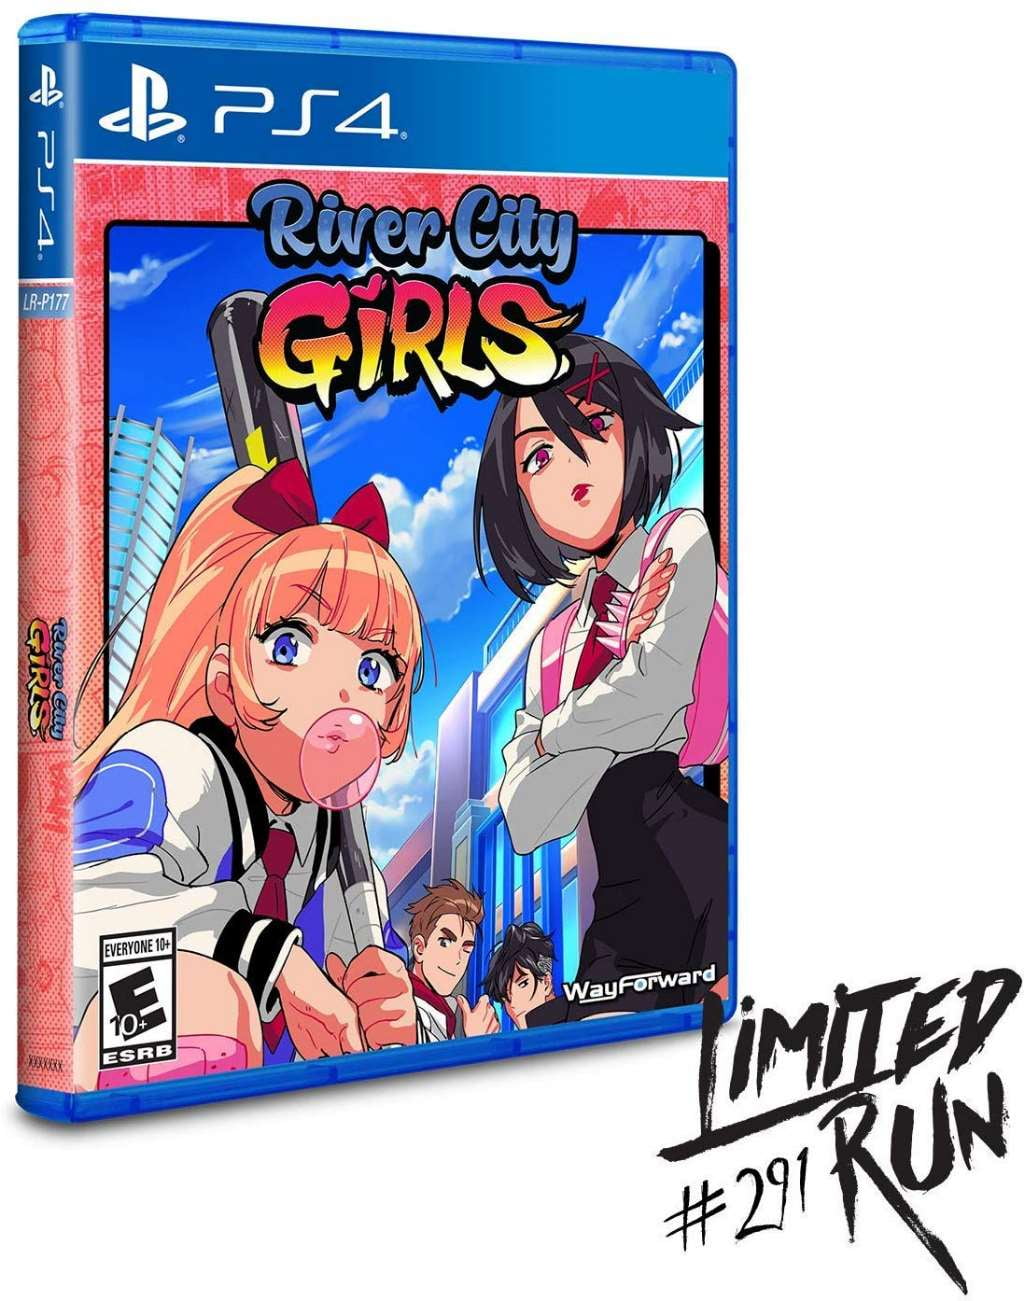 River City Girls PS4 Walmart.com